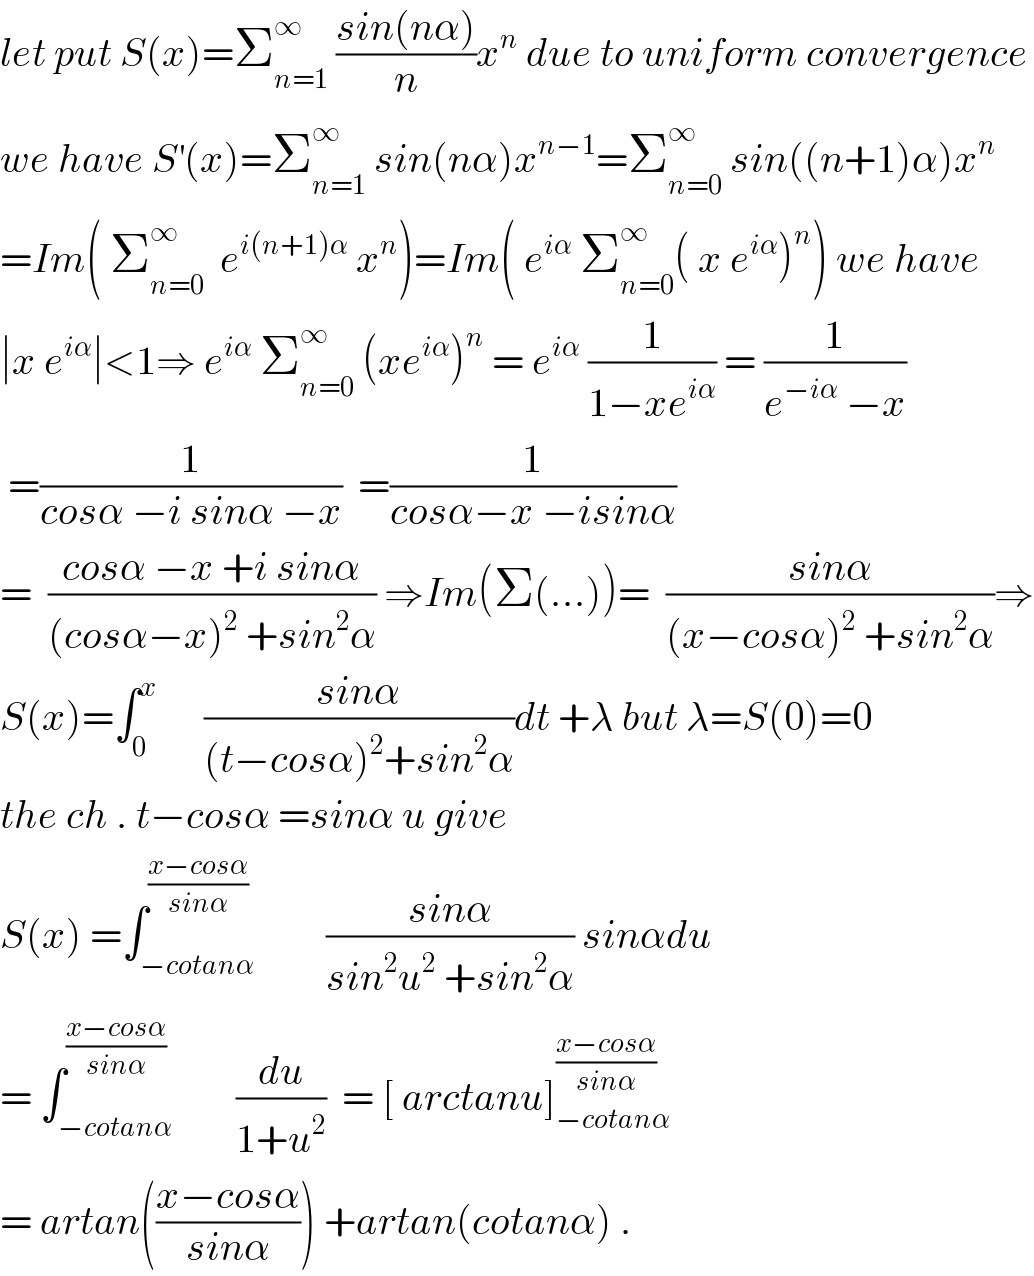 let put S(x)=Σ_(n=1) ^∞  ((sin(nα))/n)x^n  due to uniform convergence  we have S^′ (x)=Σ_(n=1) ^∞  sin(nα)x^(n−1) =Σ_(n=0) ^∞  sin((n+1)α)x^n   =Im( Σ_(n=0) ^∞   e^(i(n+1)α)  x^n )=Im( e^(iα)  Σ_(n=0) ^∞ ( x e^(iα) )^n ) we have  ∣x e^(iα) ∣<1⇒ e^(iα)  Σ_(n=0) ^∞  (xe^(iα) )^n  = e^(iα)  (1/(1−xe^(iα) )) = (1/(e^(−iα)  −x))   =(1/(cosα −i sinα −x))  =(1/(cosα−x −isinα))  =  ((cosα −x +i sinα)/((cosα−x)^2  +sin^2 α)) ⇒Im(Σ(...))=  ((sinα)/((x−cosα)^2  +sin^2 α))⇒  S(x)=∫_0 ^x       ((sinα)/((t−cosα)^2 +sin^2 α))dt +λ but λ=S(0)=0  the ch . t−cosα =sinα u give  S(x) =∫_(−cotanα) ^((x−cosα)/(sinα))         ((sinα)/(sin^2 u^2  +sin^2 α)) sinαdu  = ∫_(−cotanα) ^(((x−cosα)/(sinα))  )        (du/(1+u^2 ))  = [ arctanu]_(−cotanα) ^((x−cosα)/(sinα))   = artan(((x−cosα)/(sinα))) +artan(cotanα) .  